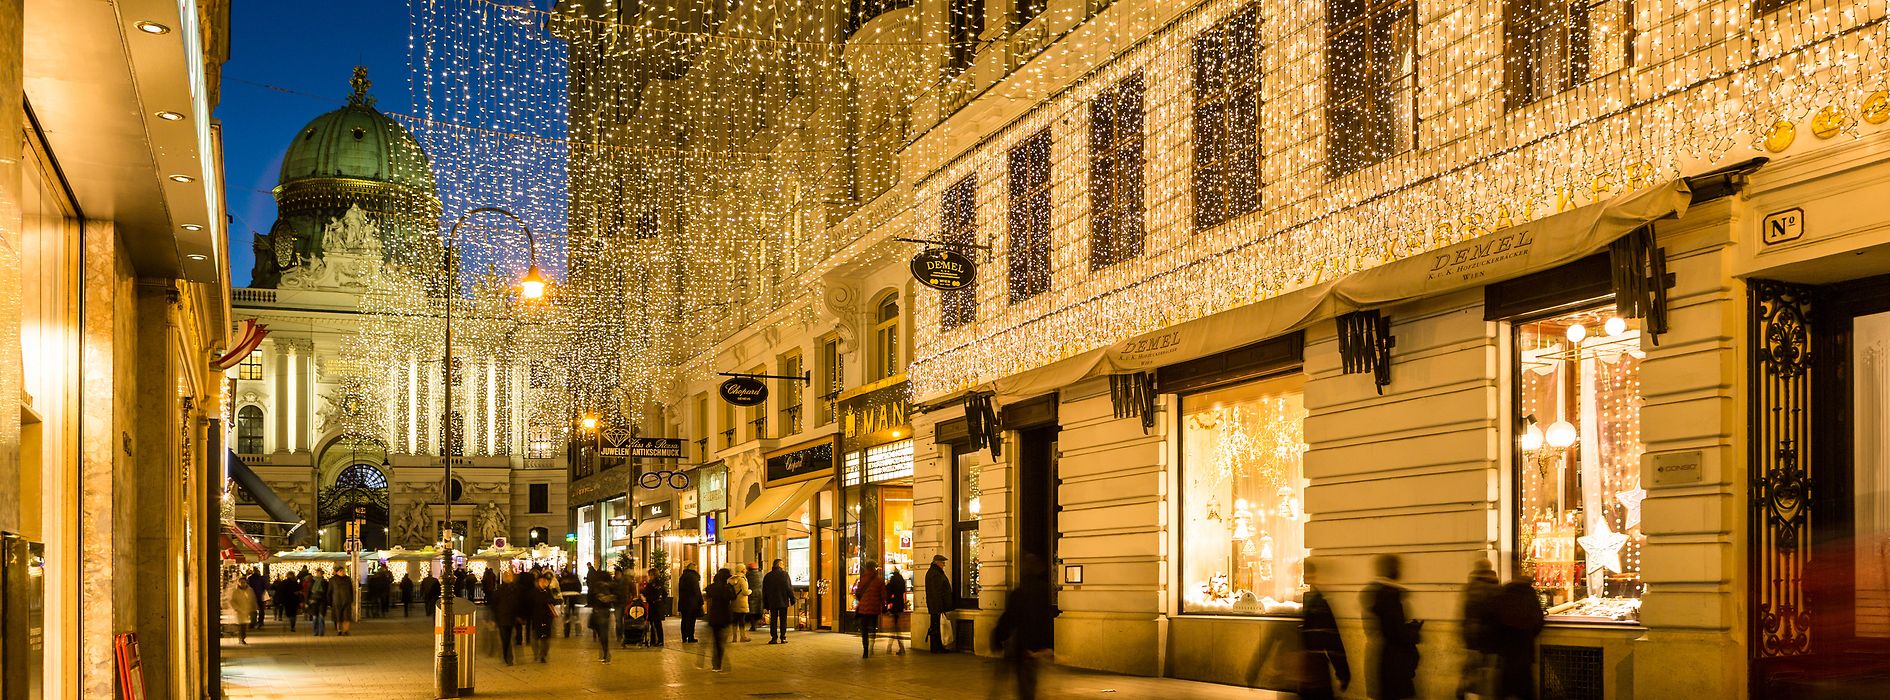 Noël à Vienne – Illuminations de Noël sur le Kohlmarkt